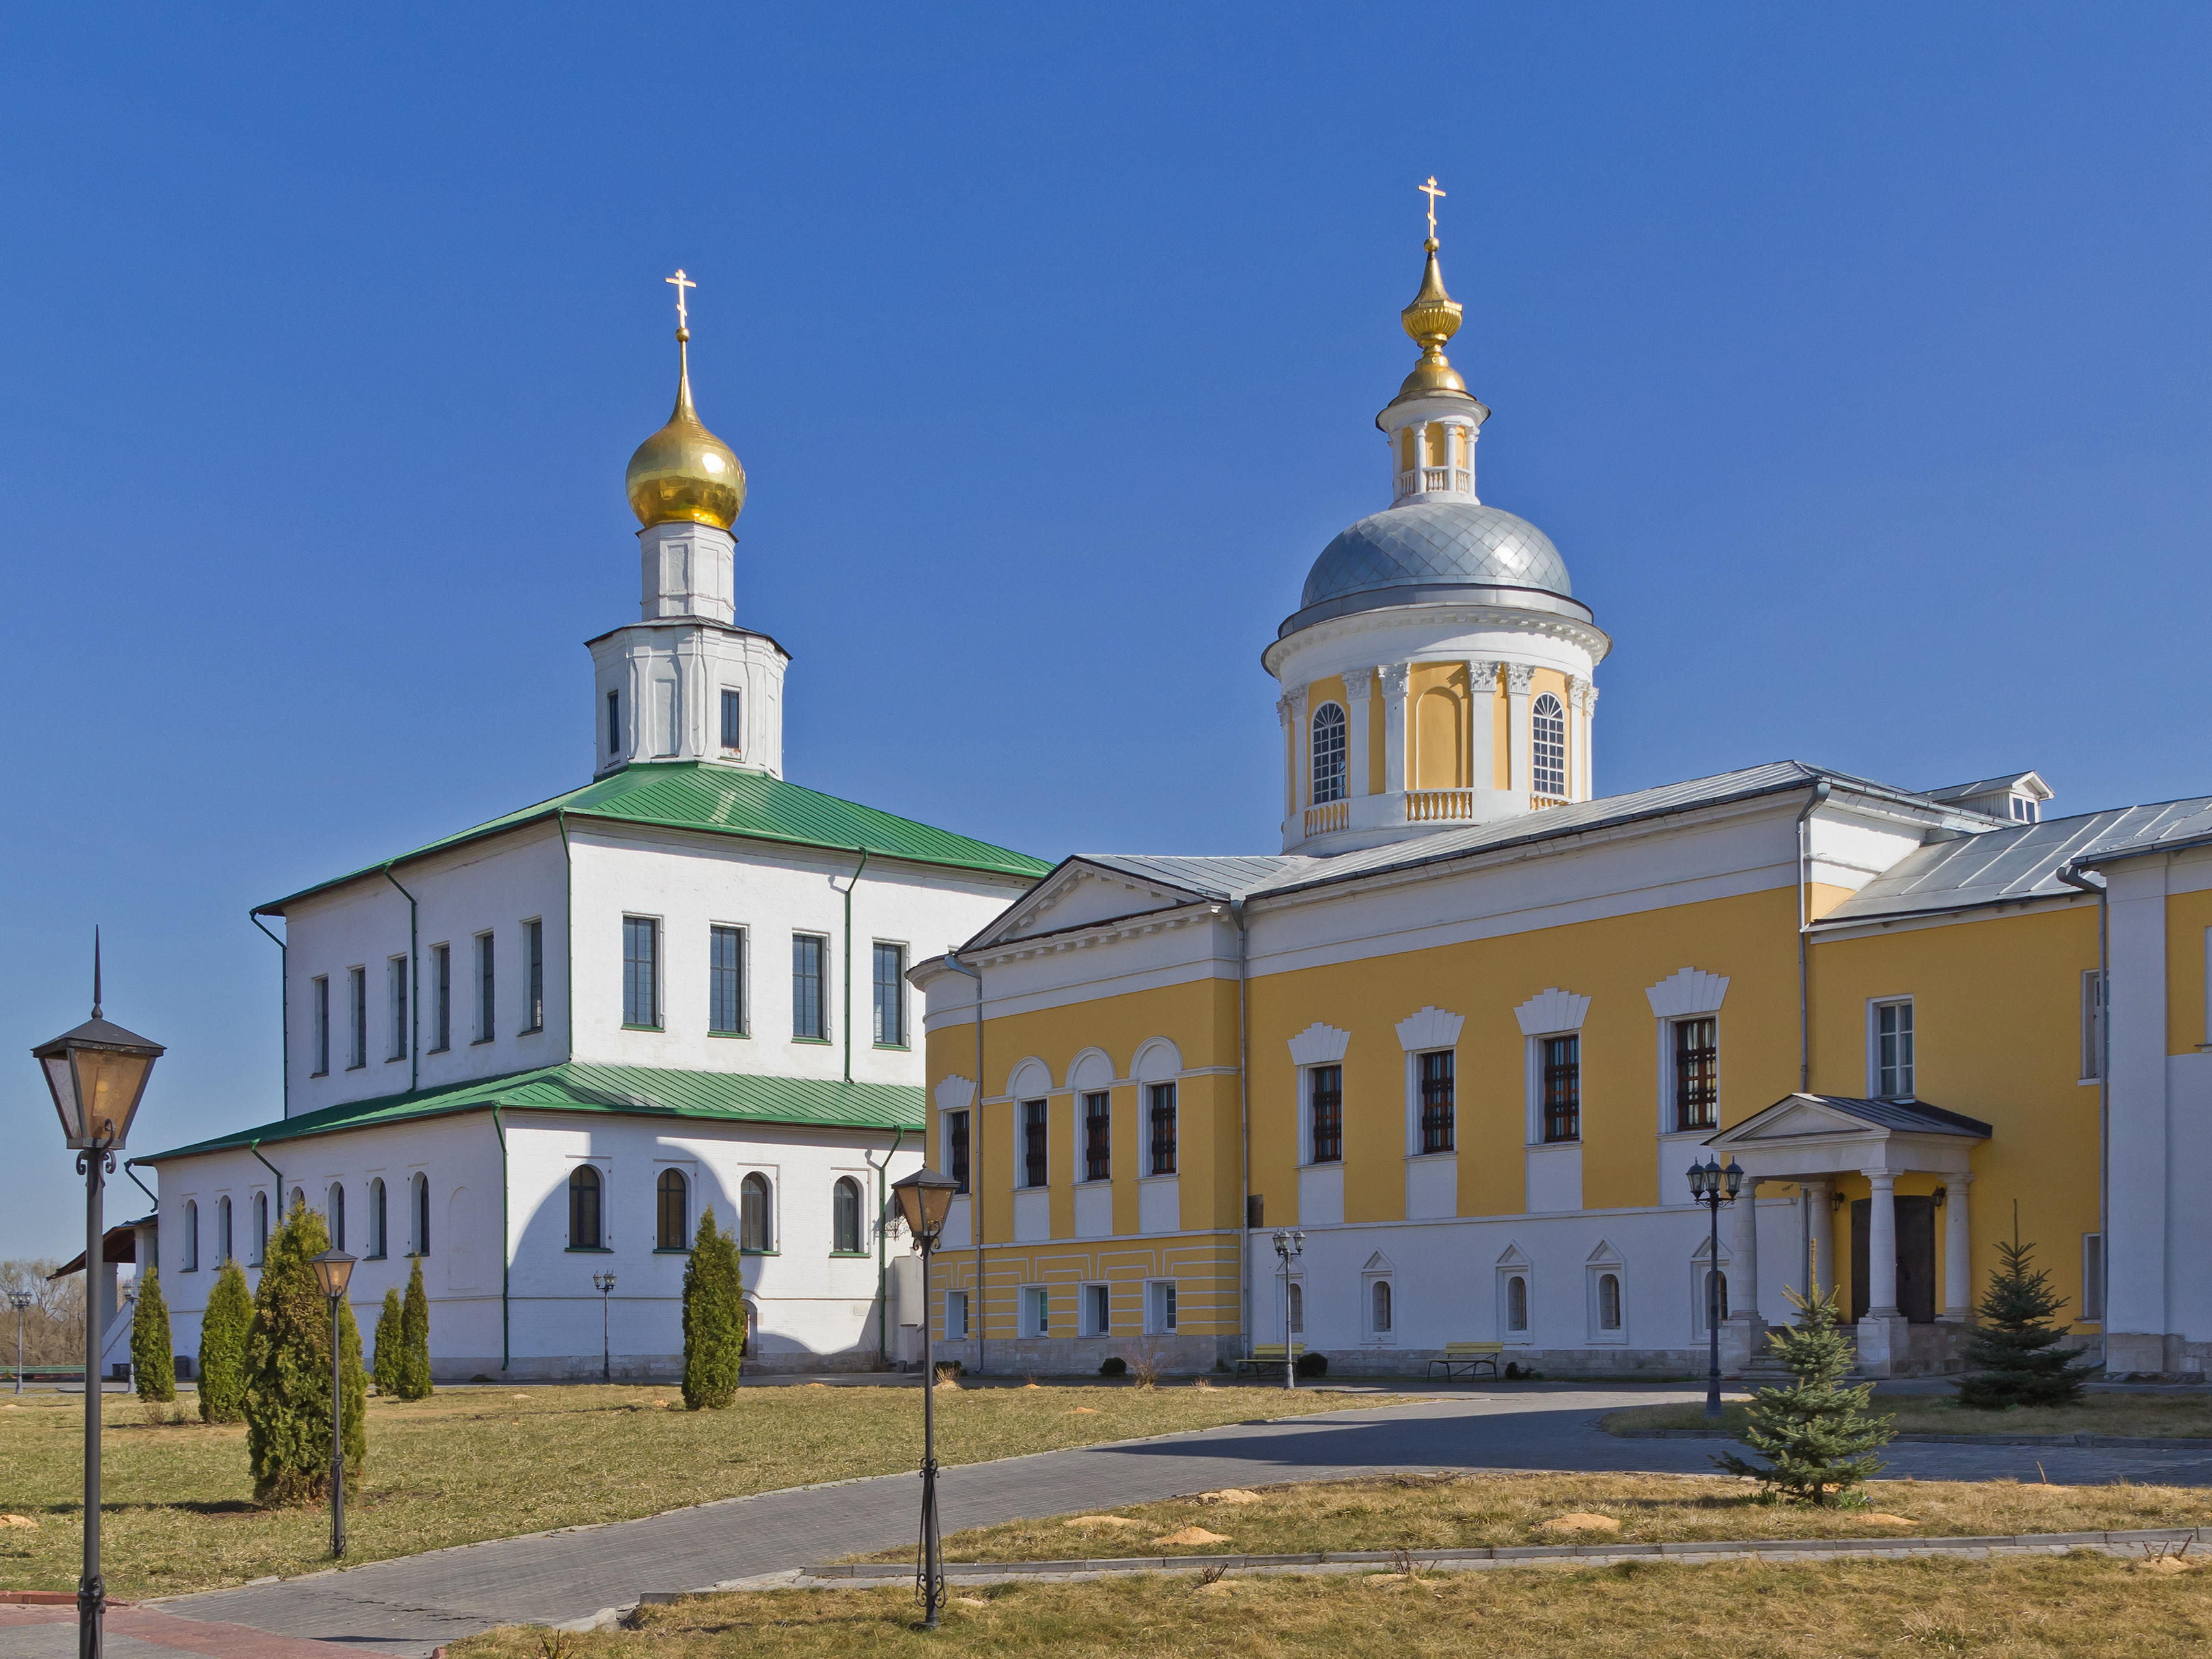 Kolomna 04-2014 img16 Staro-Golutvin Monastery